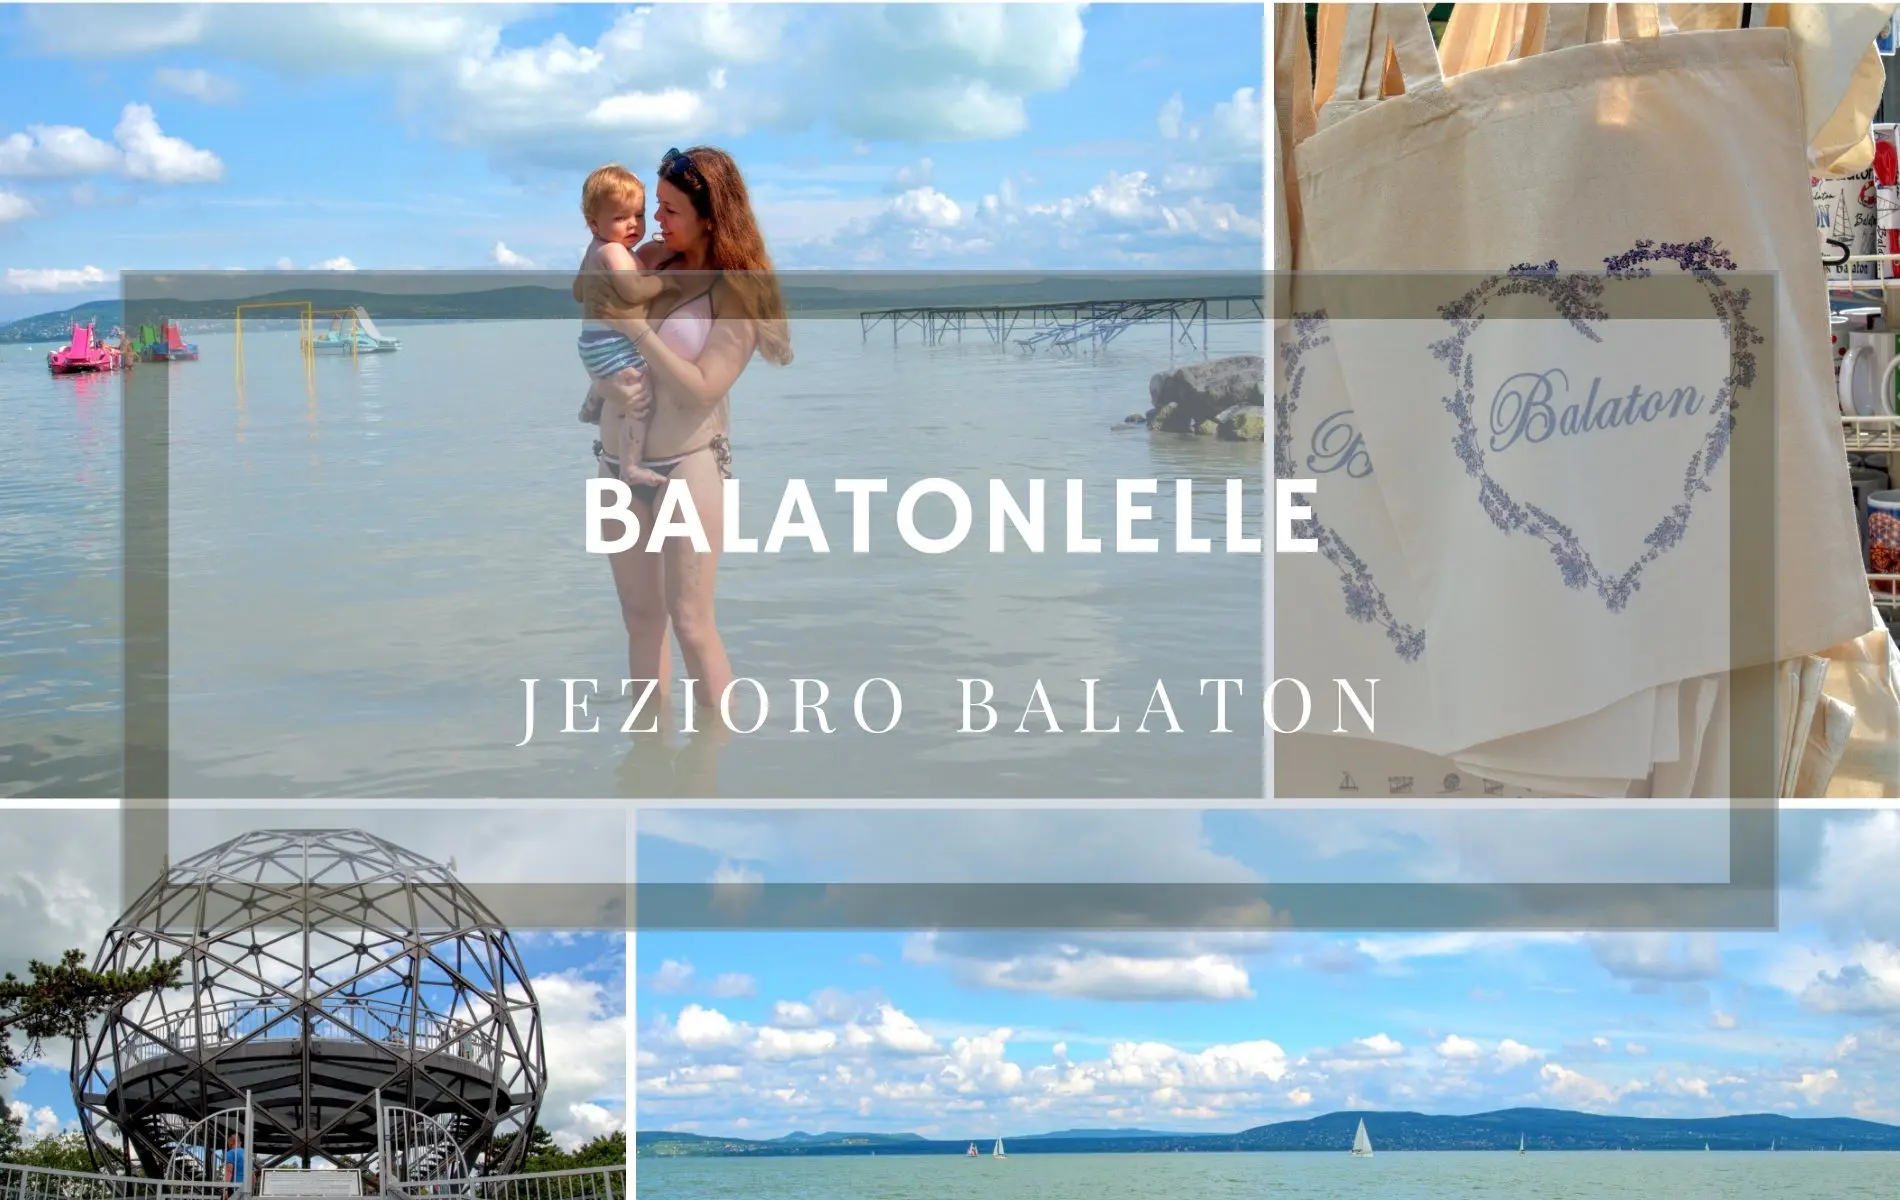 Balaton - jednodniowy postój w drodze do Chorwacji w Balatonlelle